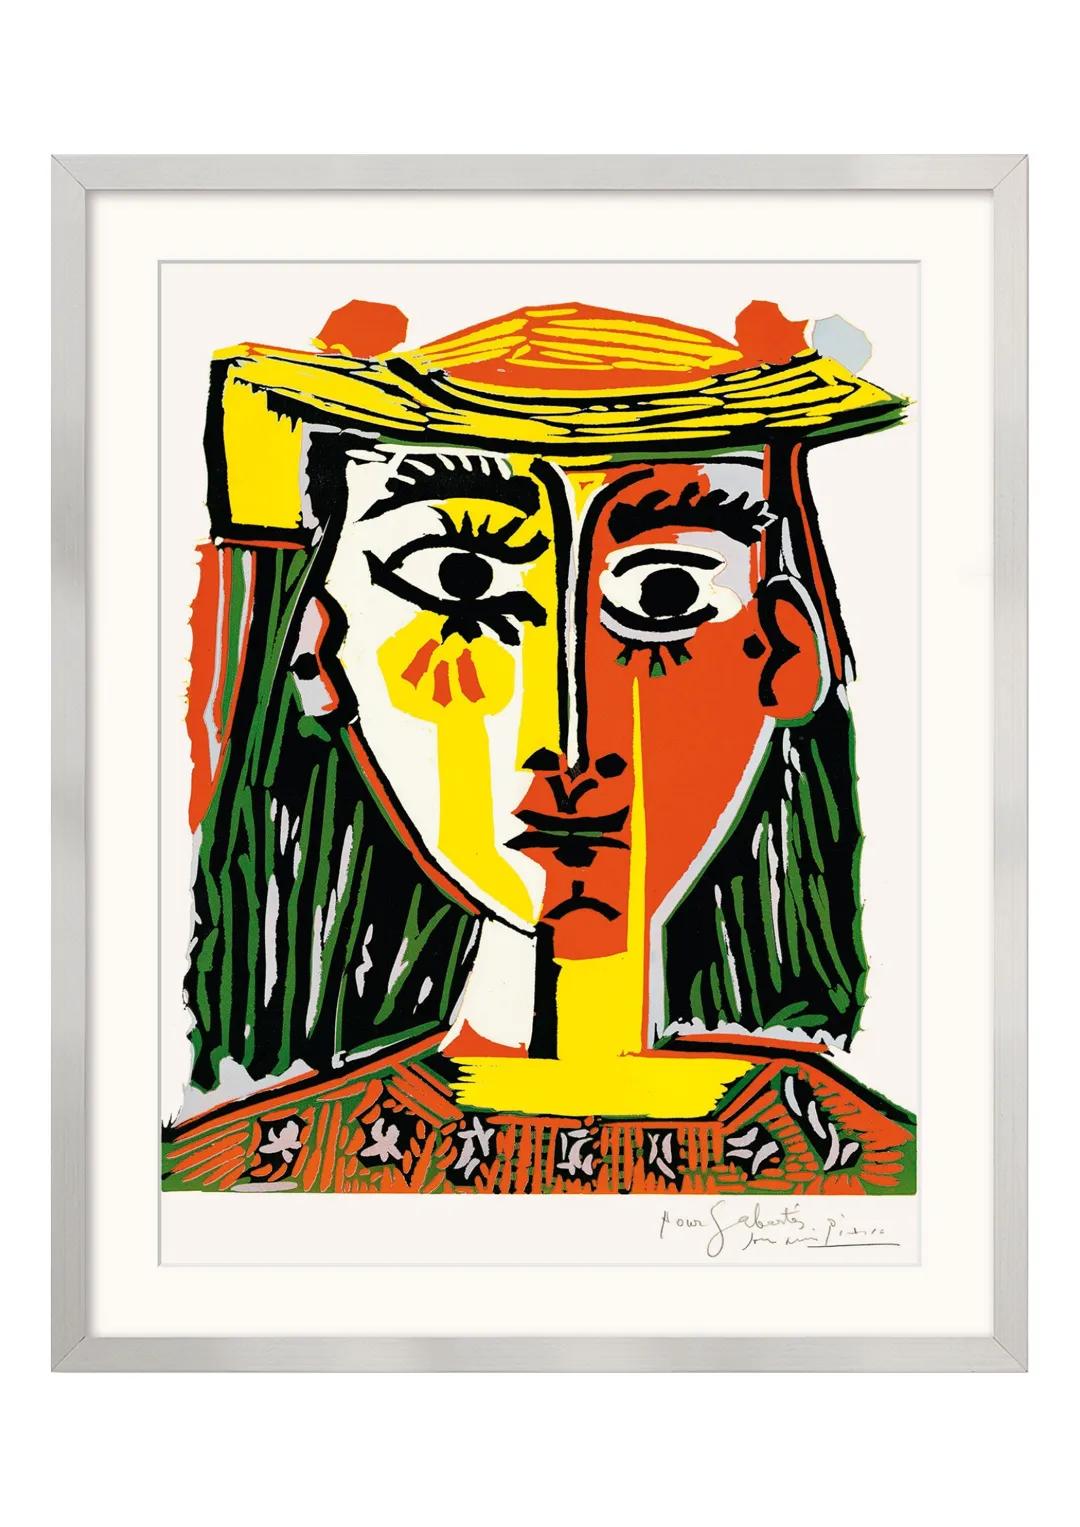 Bildanalyse von ,,Frau mit Pompom-Hut und einer bedruckten Bluse" von
Pablo Picasso
Das Gemälde ,,Frau mit Pompom-Hut und einer bedruckten B